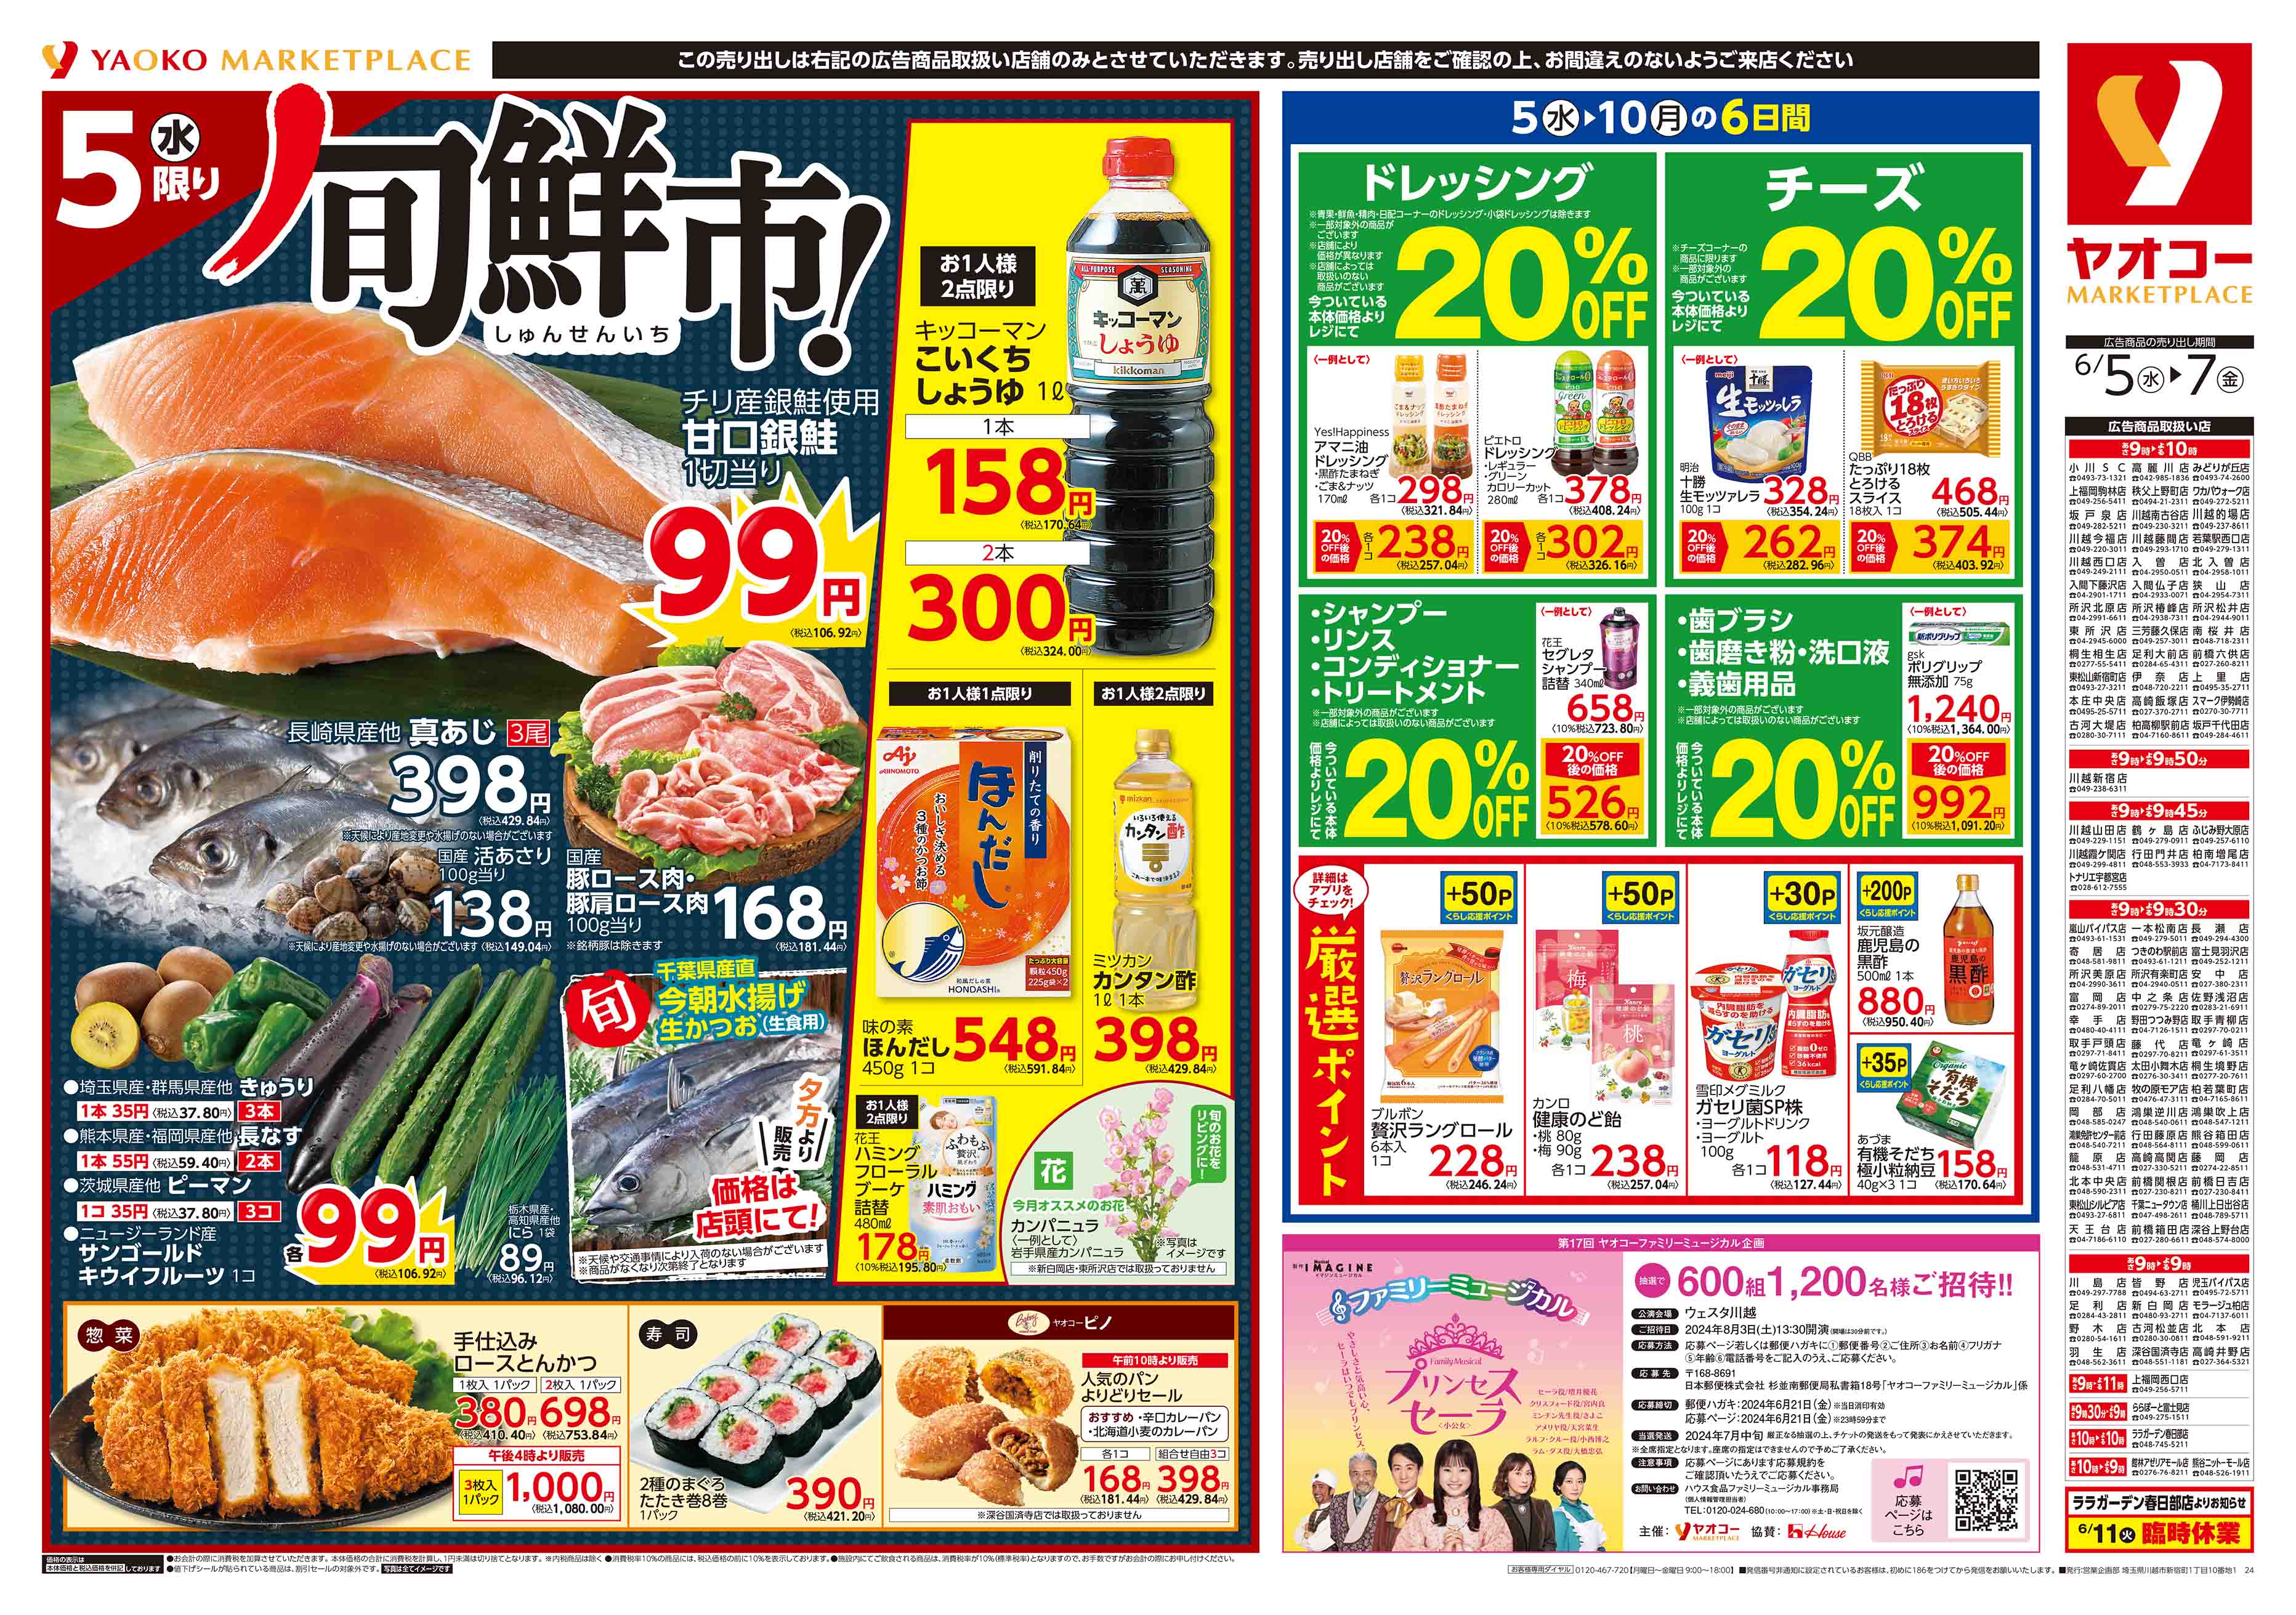 東松山シルピア店 | 食生活提案型スーパーマーケット ヤオコー MARKETPLACE